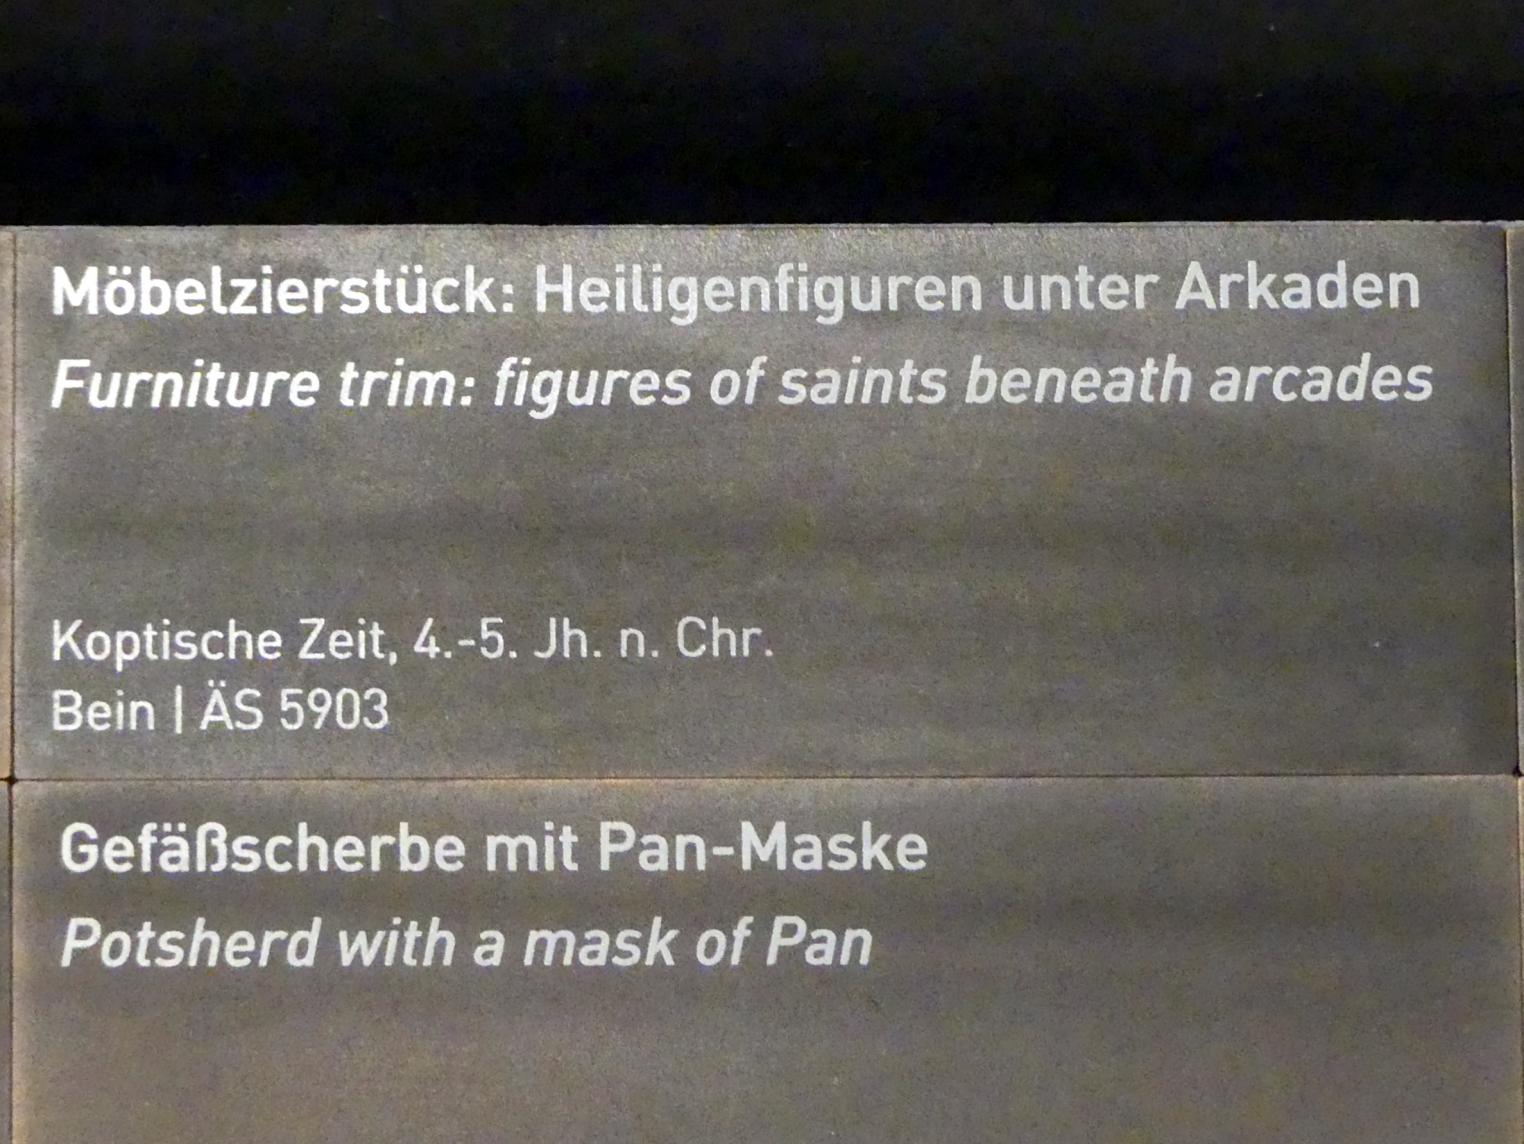 Möbelzierstück: Heiligenfiguren unter Arkaden, Koptische Zeit, 200 - 800, 300 - 500, Bild 2/2